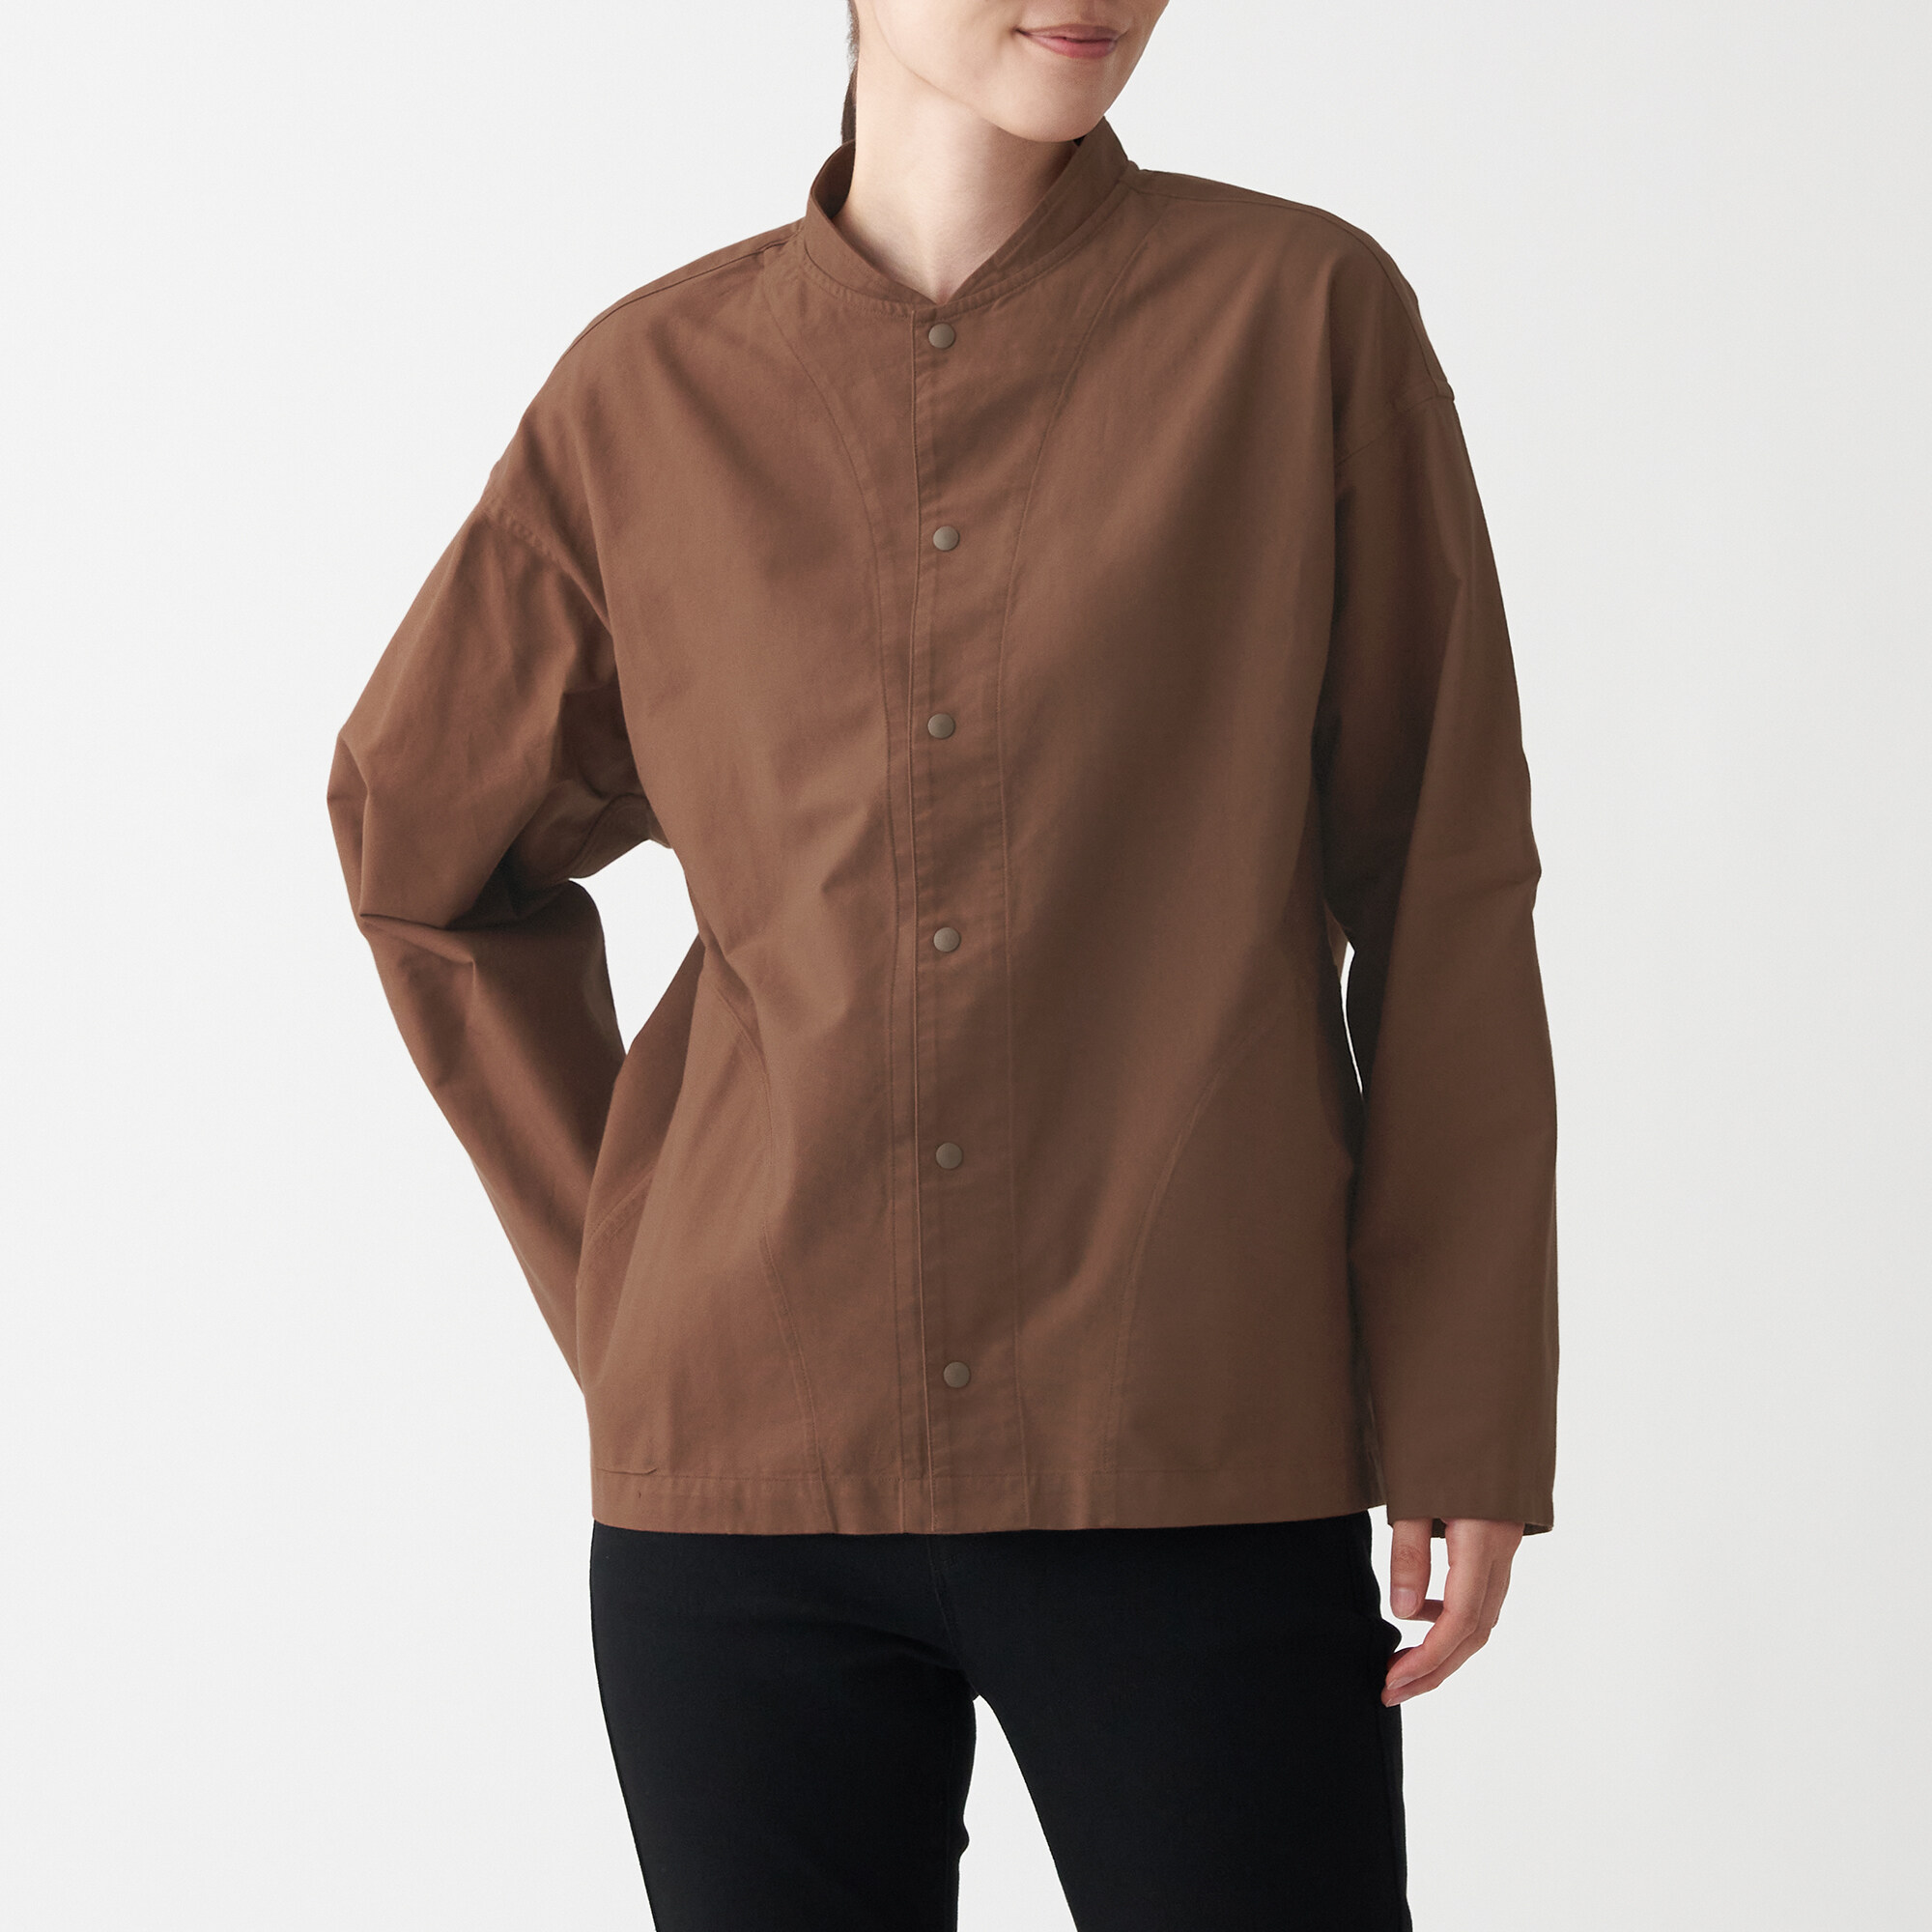 มูจิ เสื้อเชิ้ตผ้าออกซฟอร์ตฟอก ปกตั้ง Unisex - MUJI Washed Oxford Stand Collar Shirt สี อิฐ ขนาด L|XL